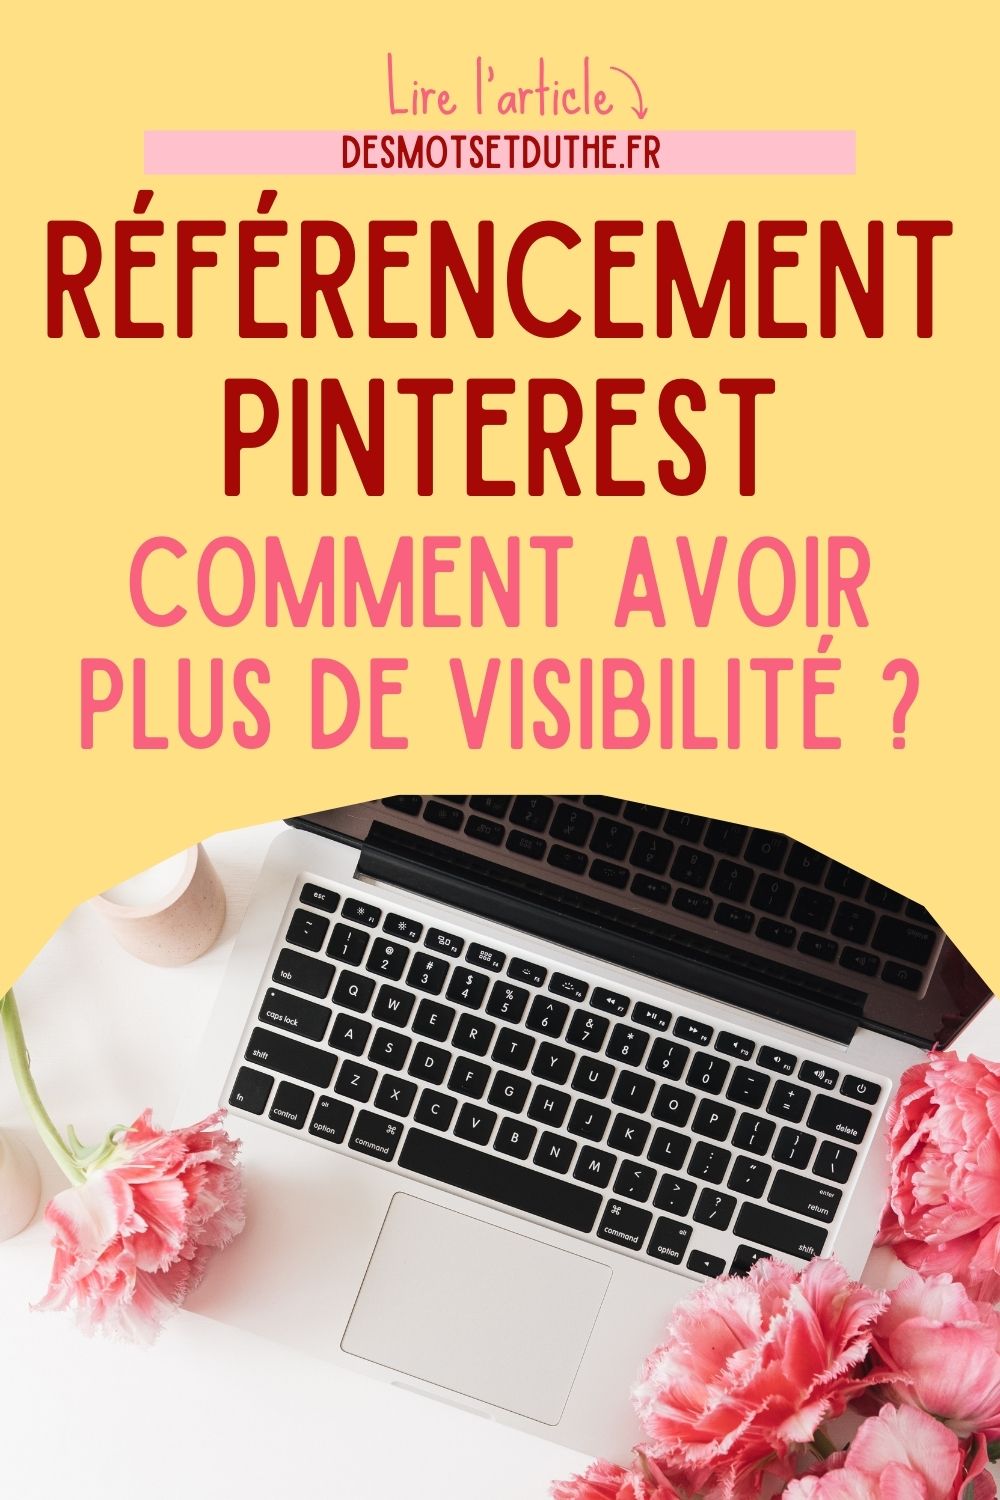 Comment avoir plus de visibilité grâce au référencement Pinterest ?